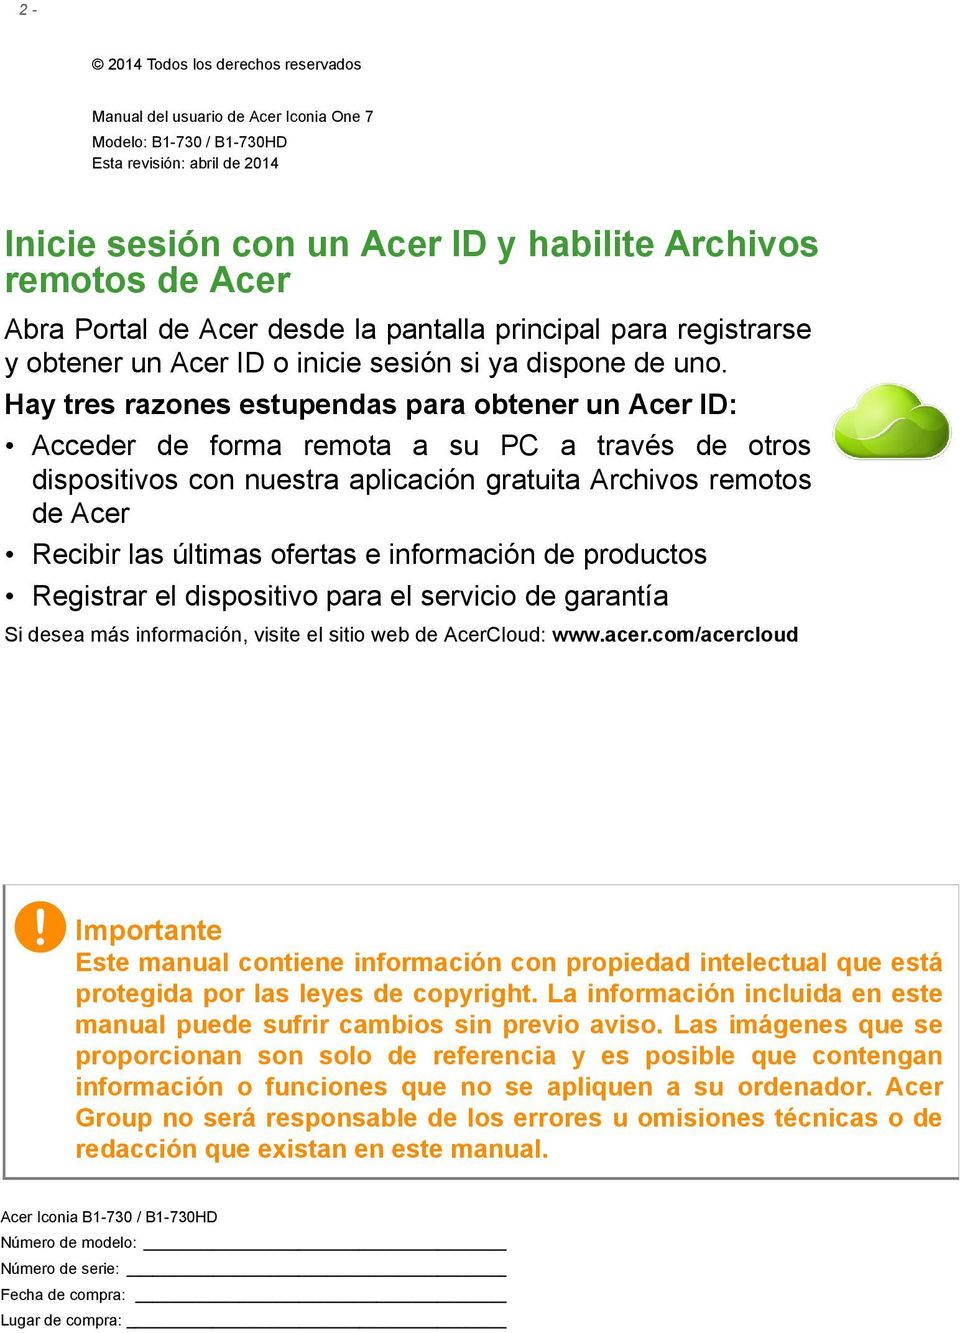 Hay tres razones estupendas para obtener un Acer ID: Acceder de forma remota a su PC a través de otros dispositivos con nuestra aplicación gratuita Archivos remotos de Acer Recibir las últimas